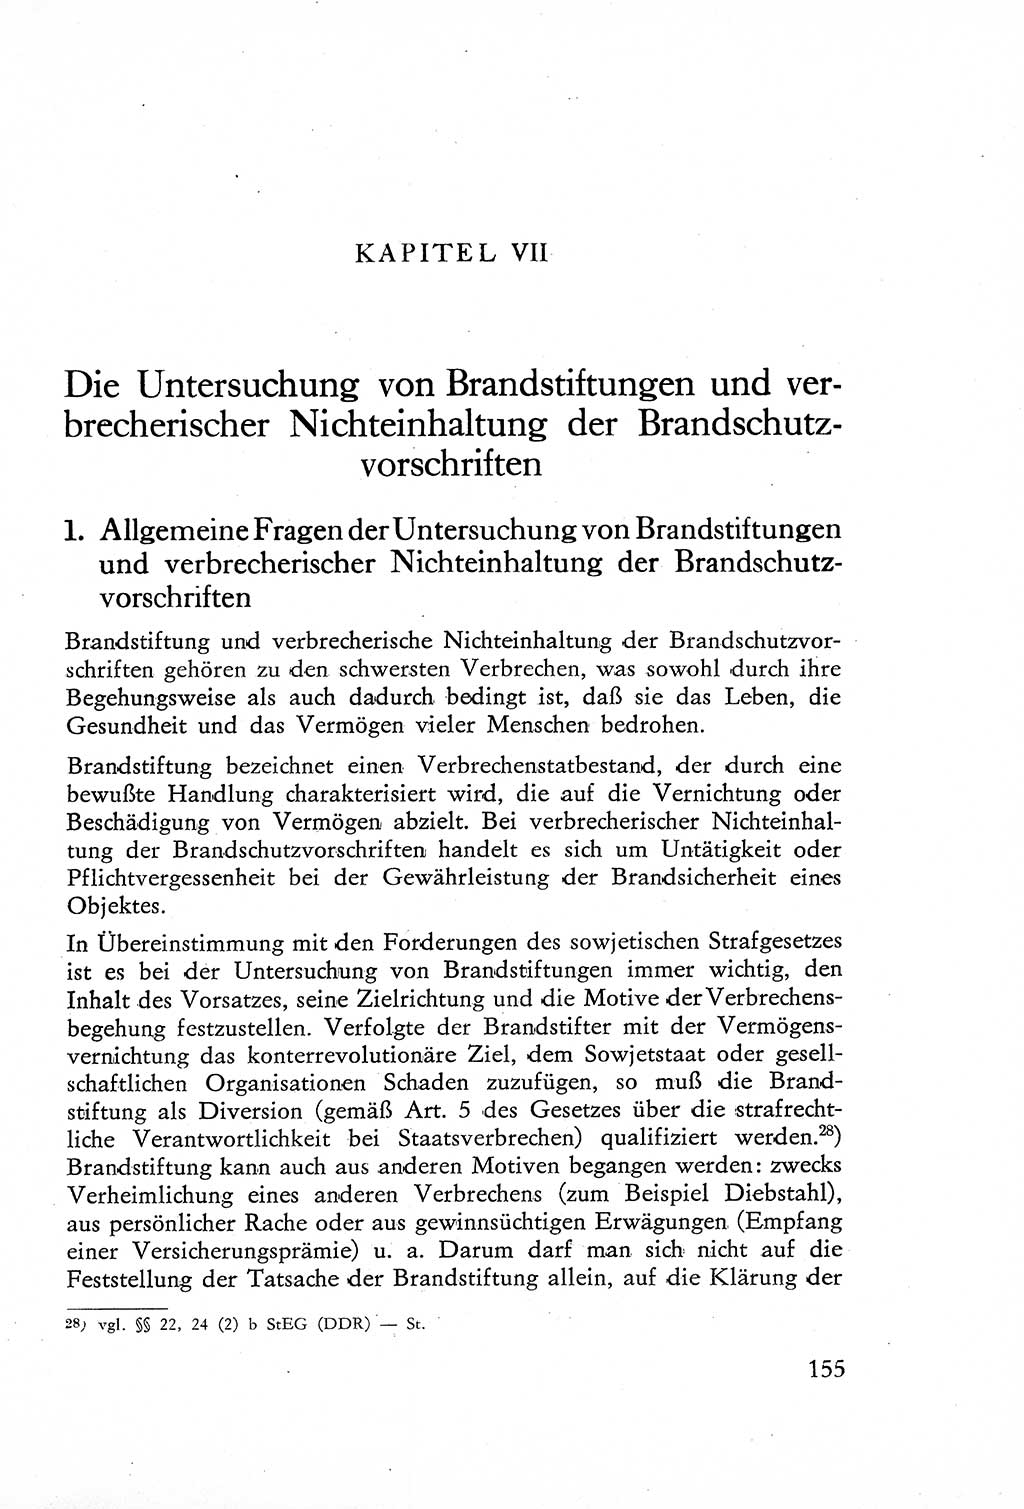 Die Untersuchung einzelner Verbrechensarten [Deutsche Demokratische Republik (DDR)] 1960, Seite 155 (Unters. Verbr.-Art. DDR 1960, S. 155)